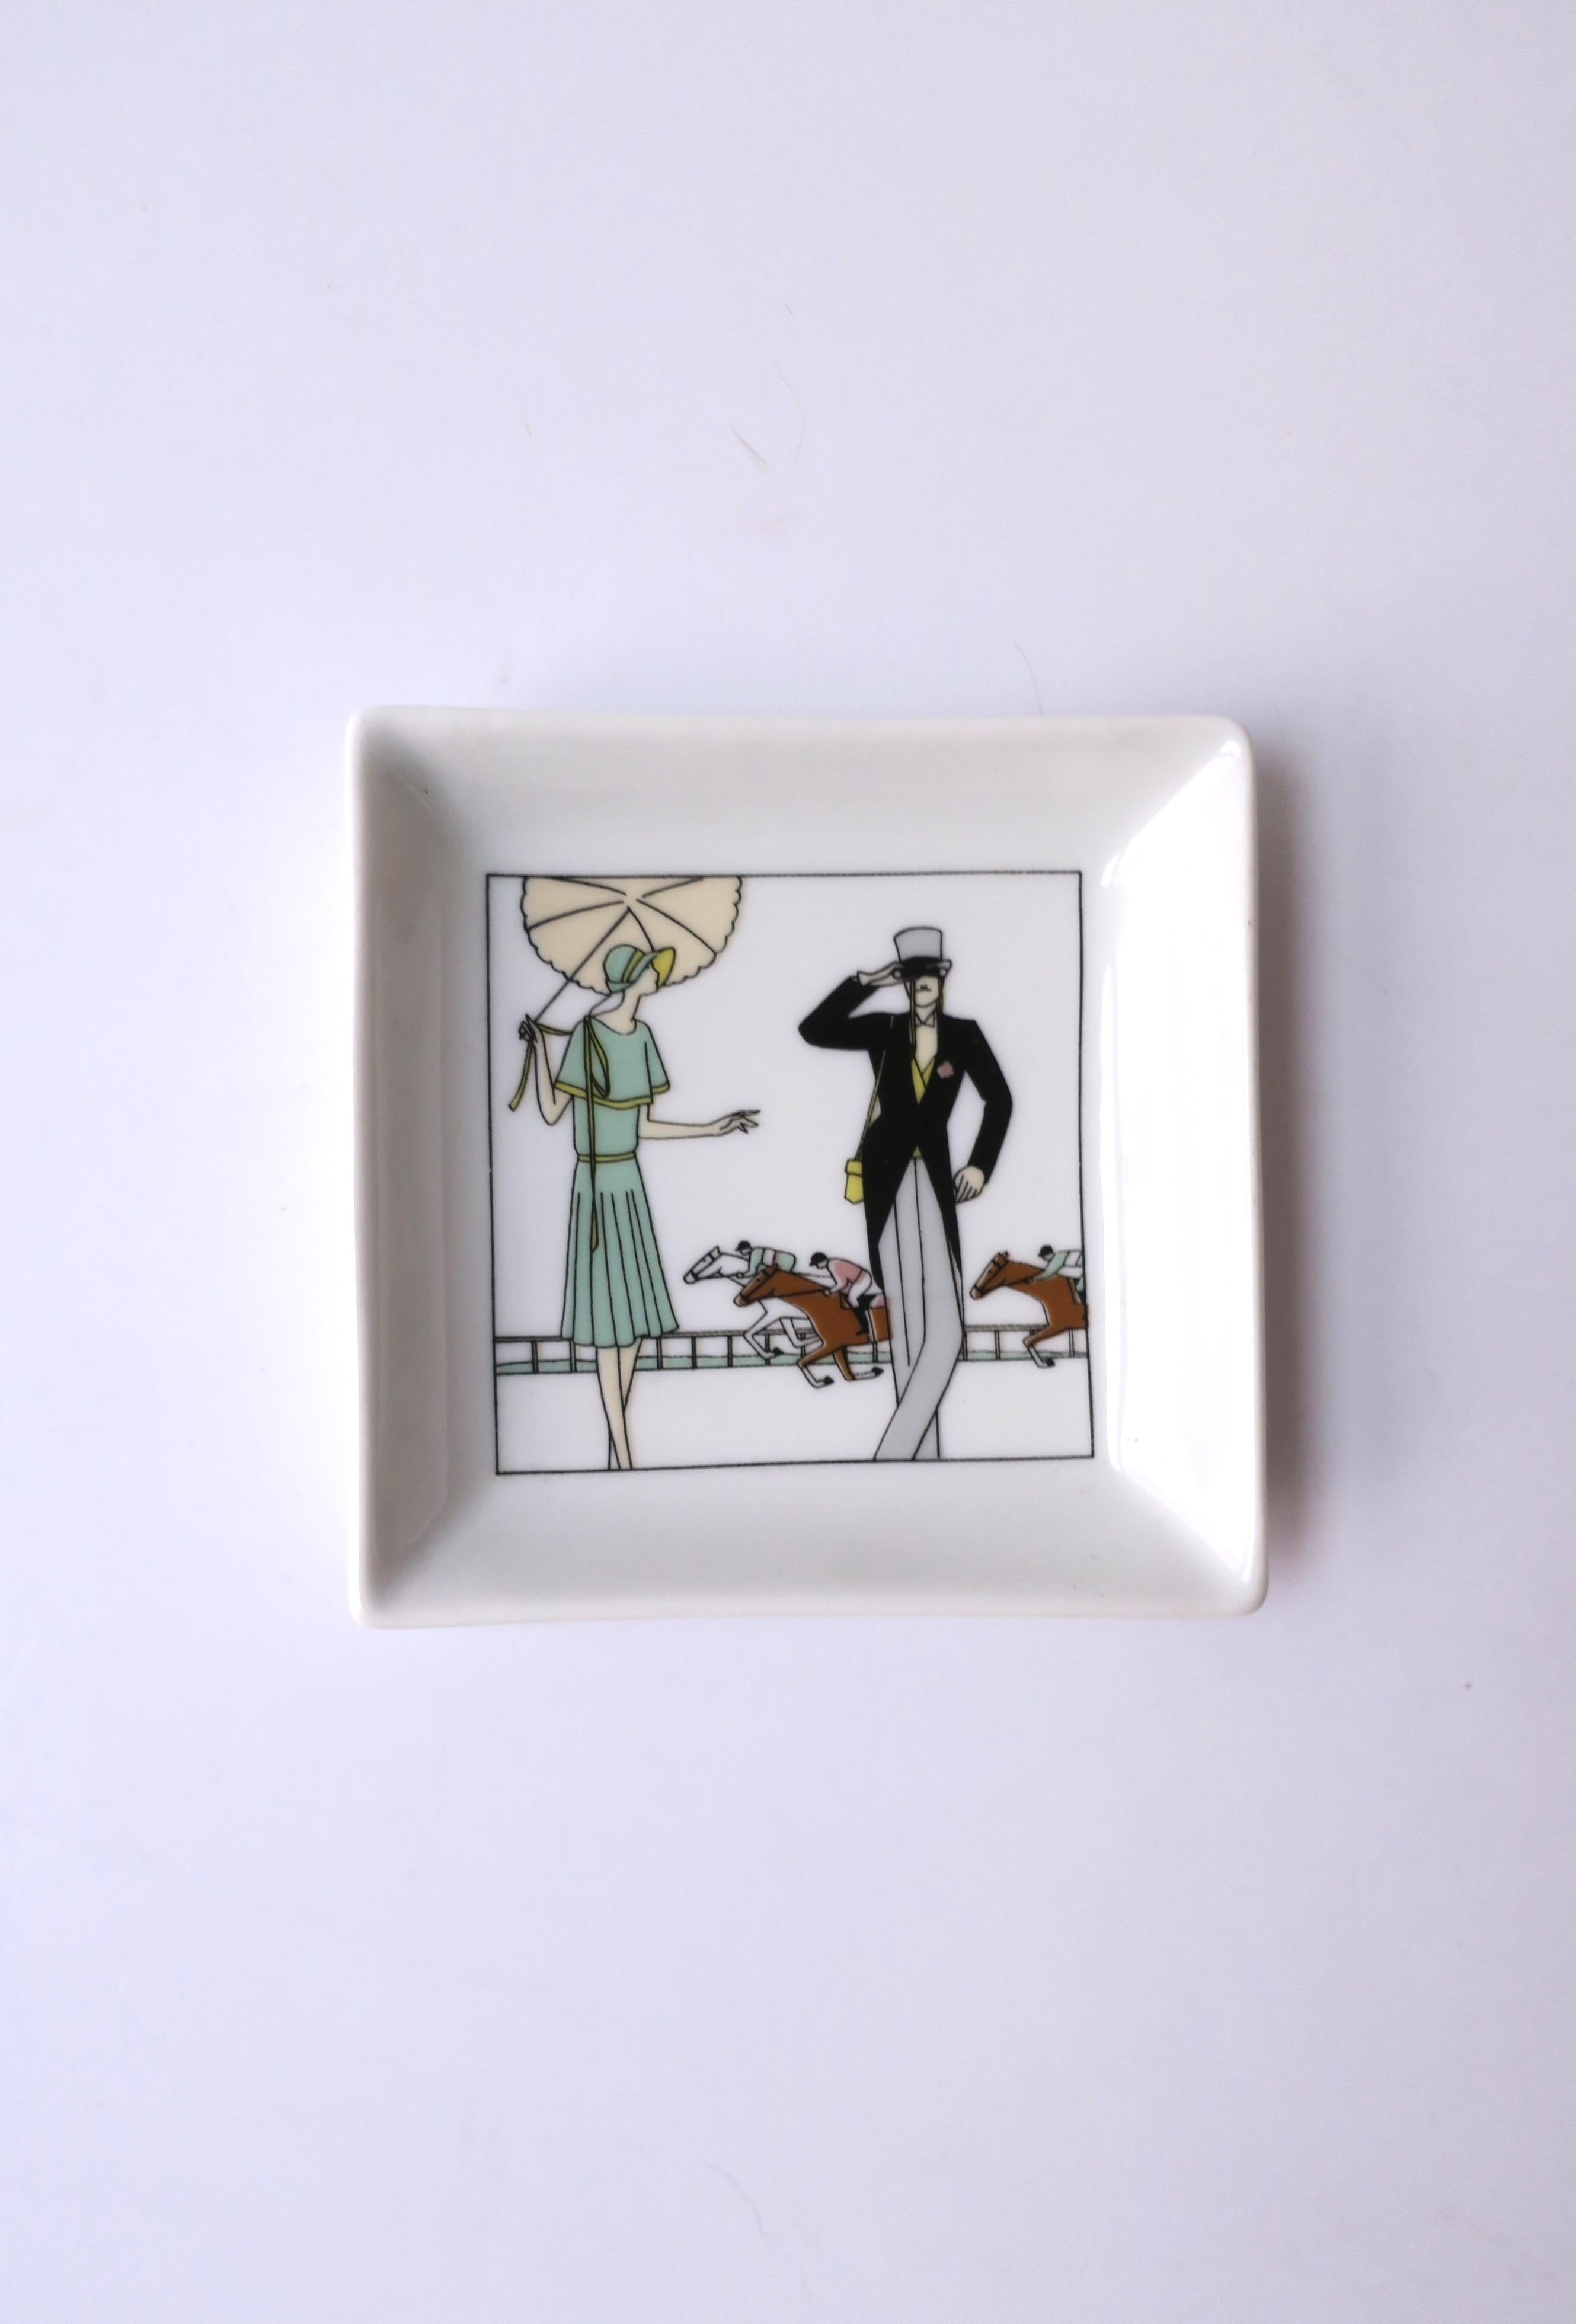 Französische Porzellan-Schmuckschale mit Pferderennszene, ca. Ende des 20. Jahrhunderts, Frankreich. Eine Derby-Rennszene mit Vollblütern und Jockeys sowie einer fein gekleideten Frau und einem Mann. Eine tolle Schale für Schmuck oder andere